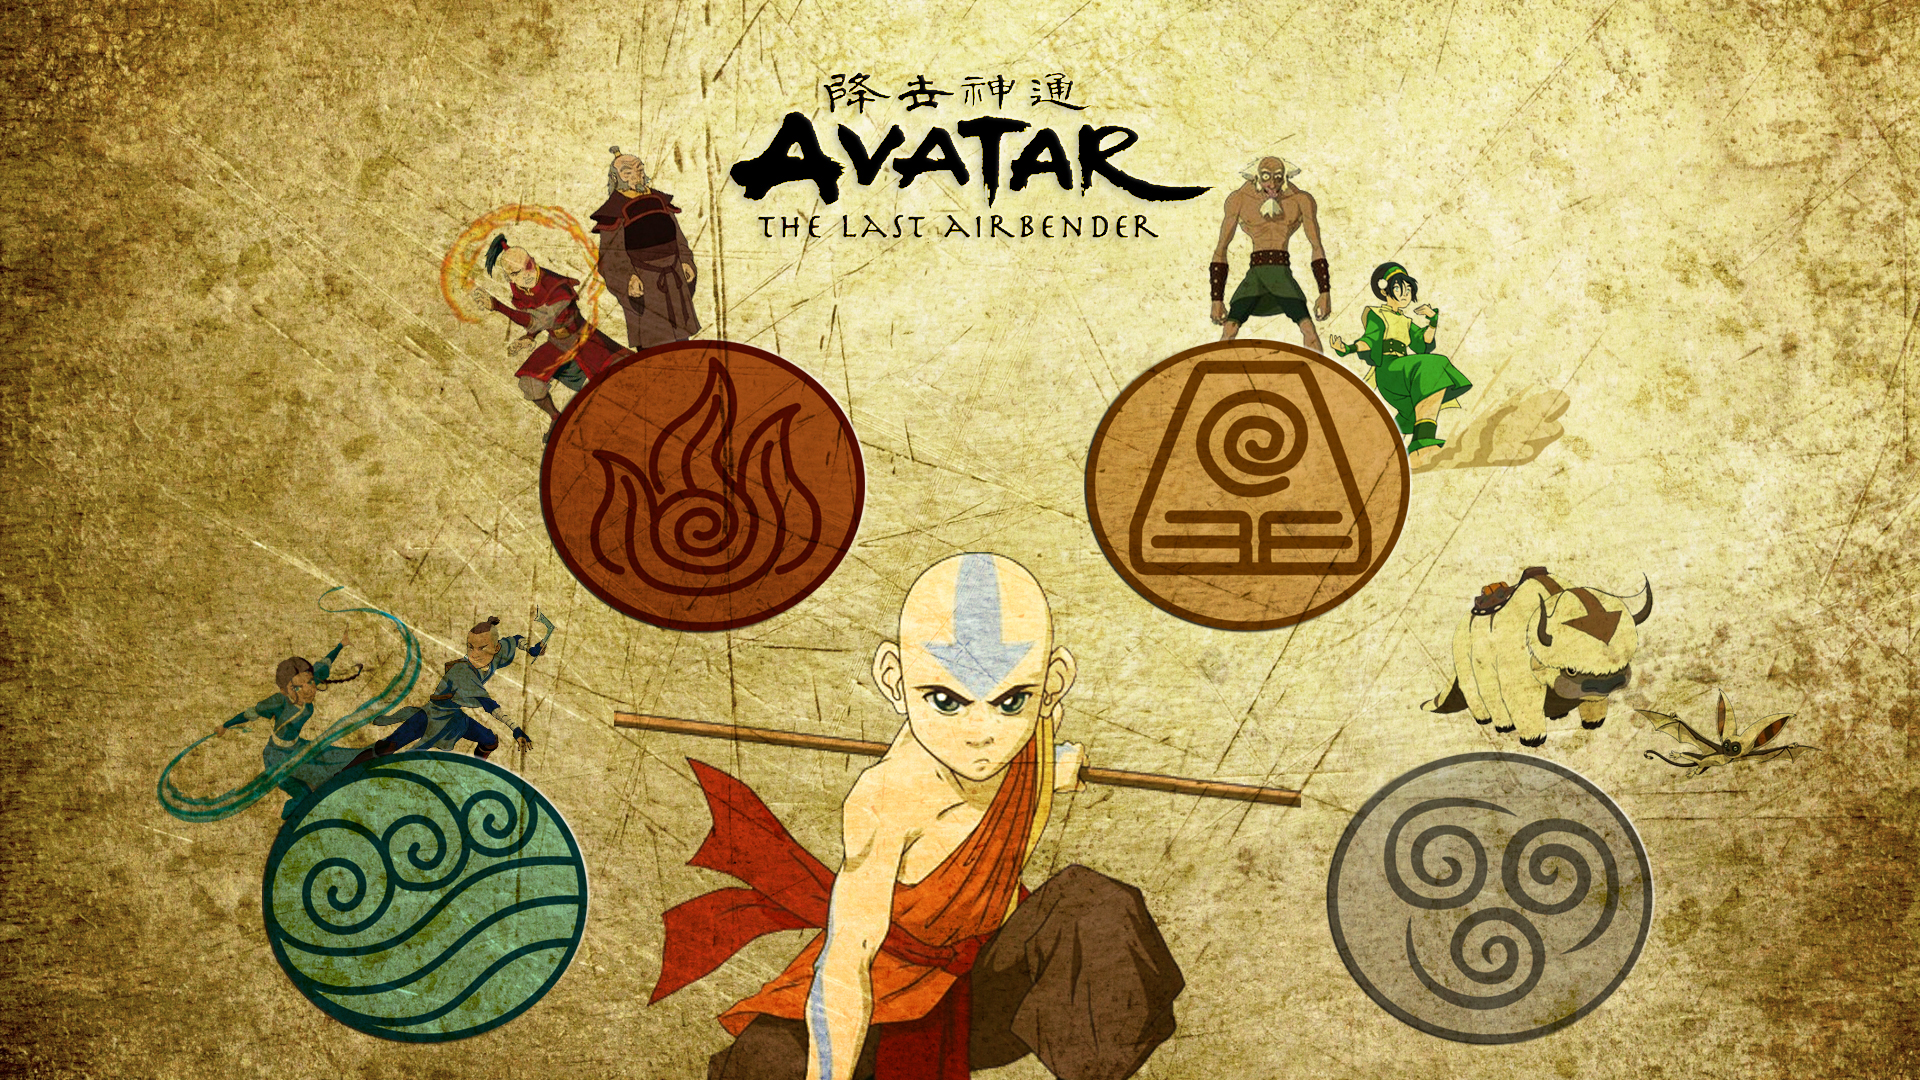 Aang Fan Digital Art Avatar Wallpapers